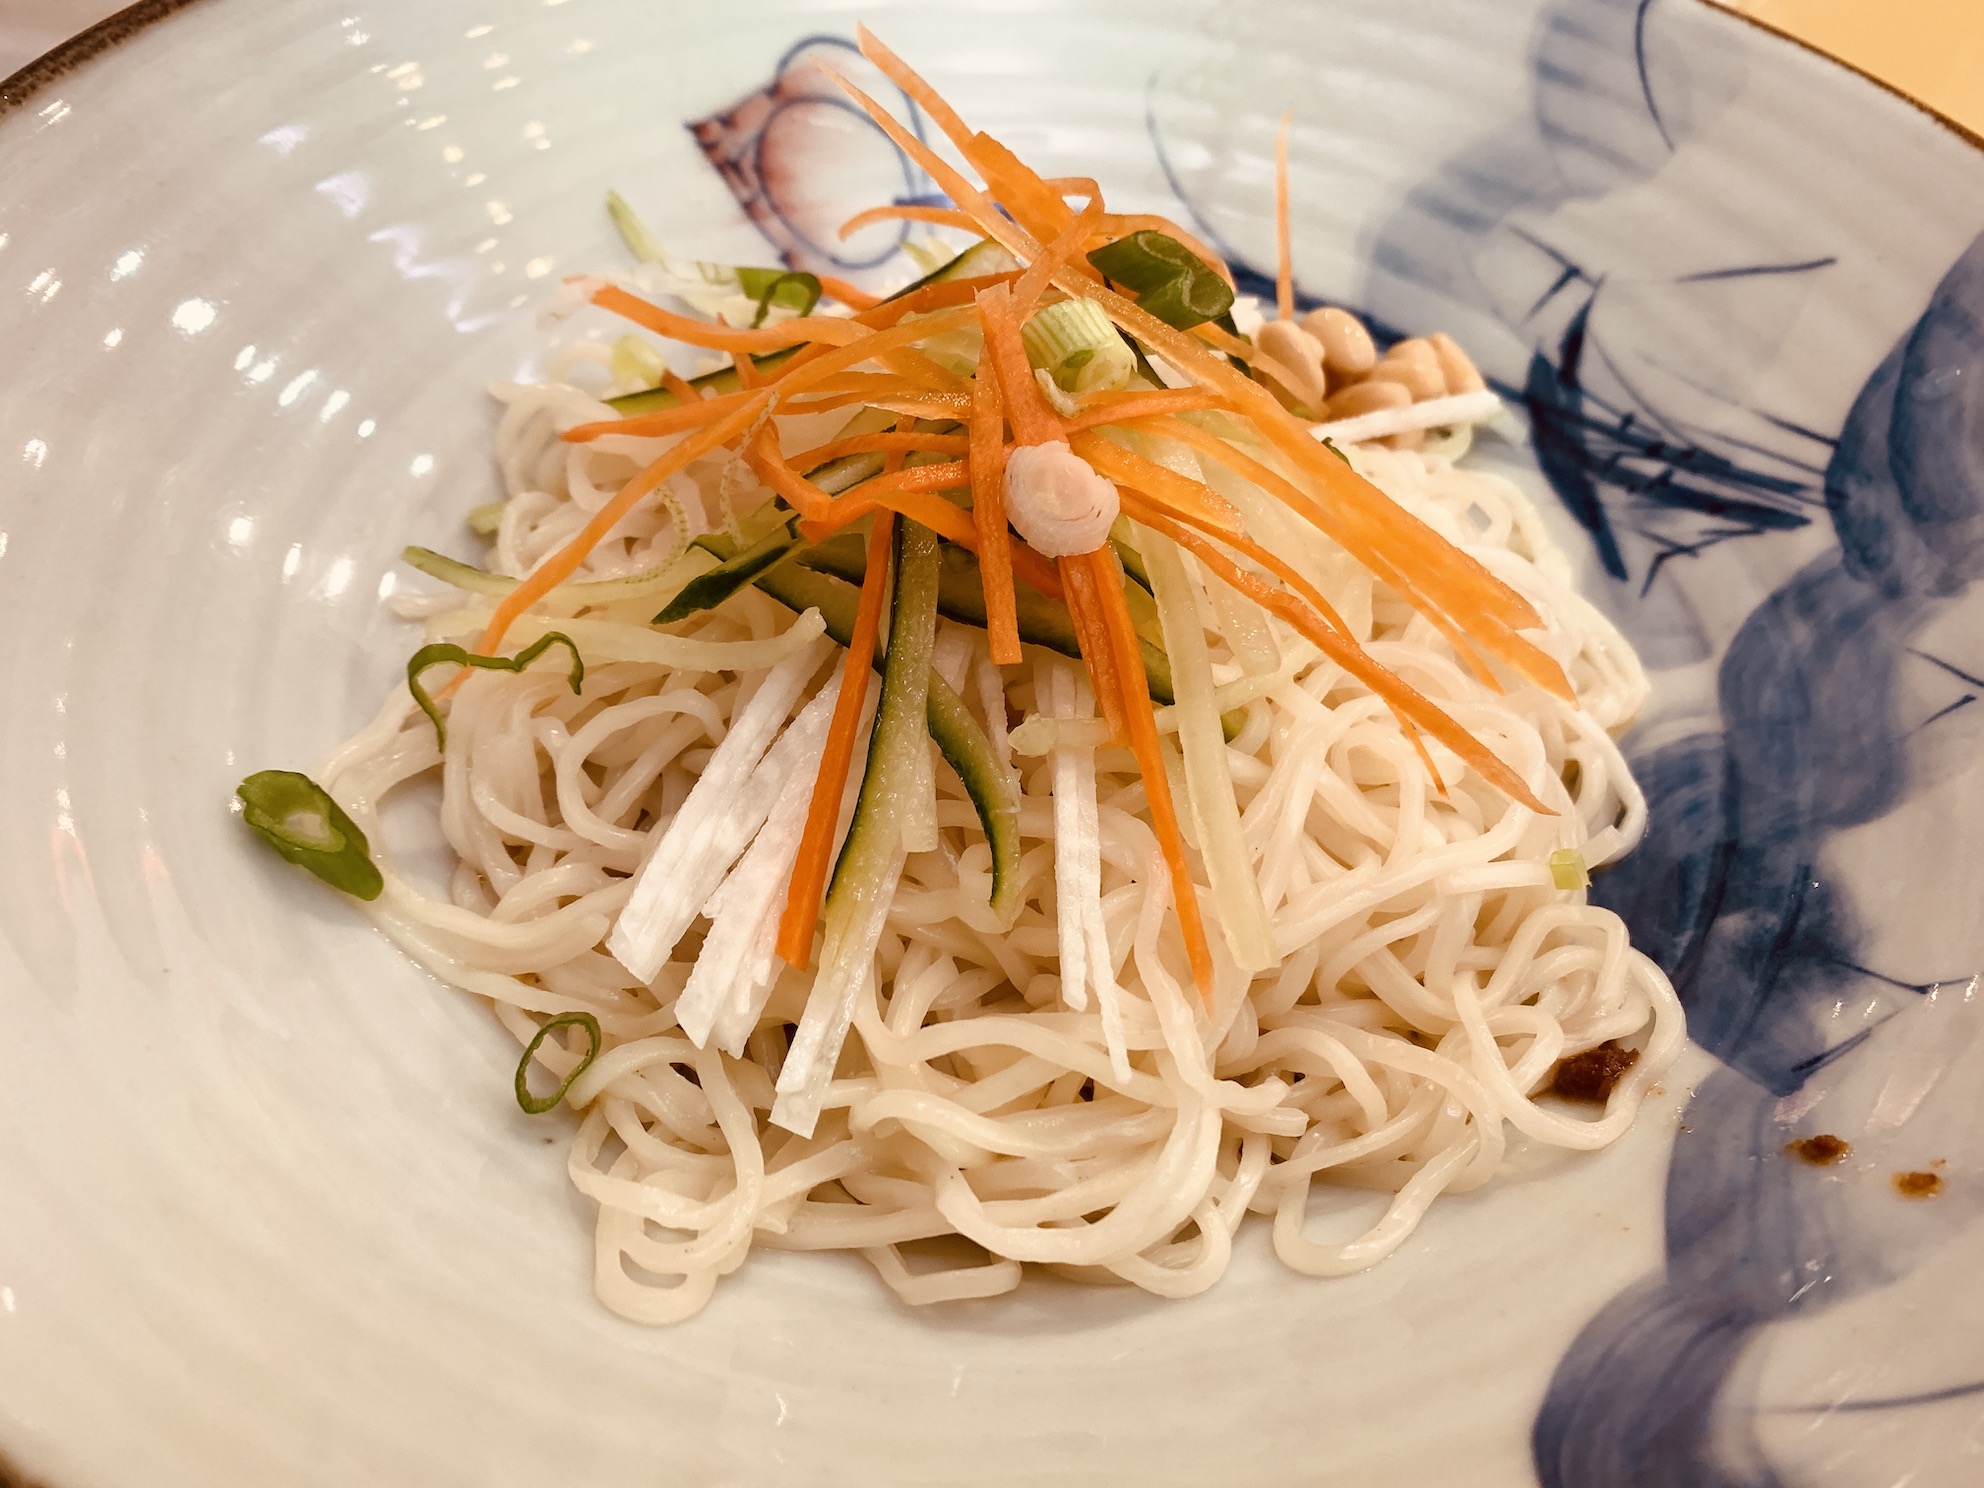 Lao Beijing - Beijing-style Zhajing Noodle